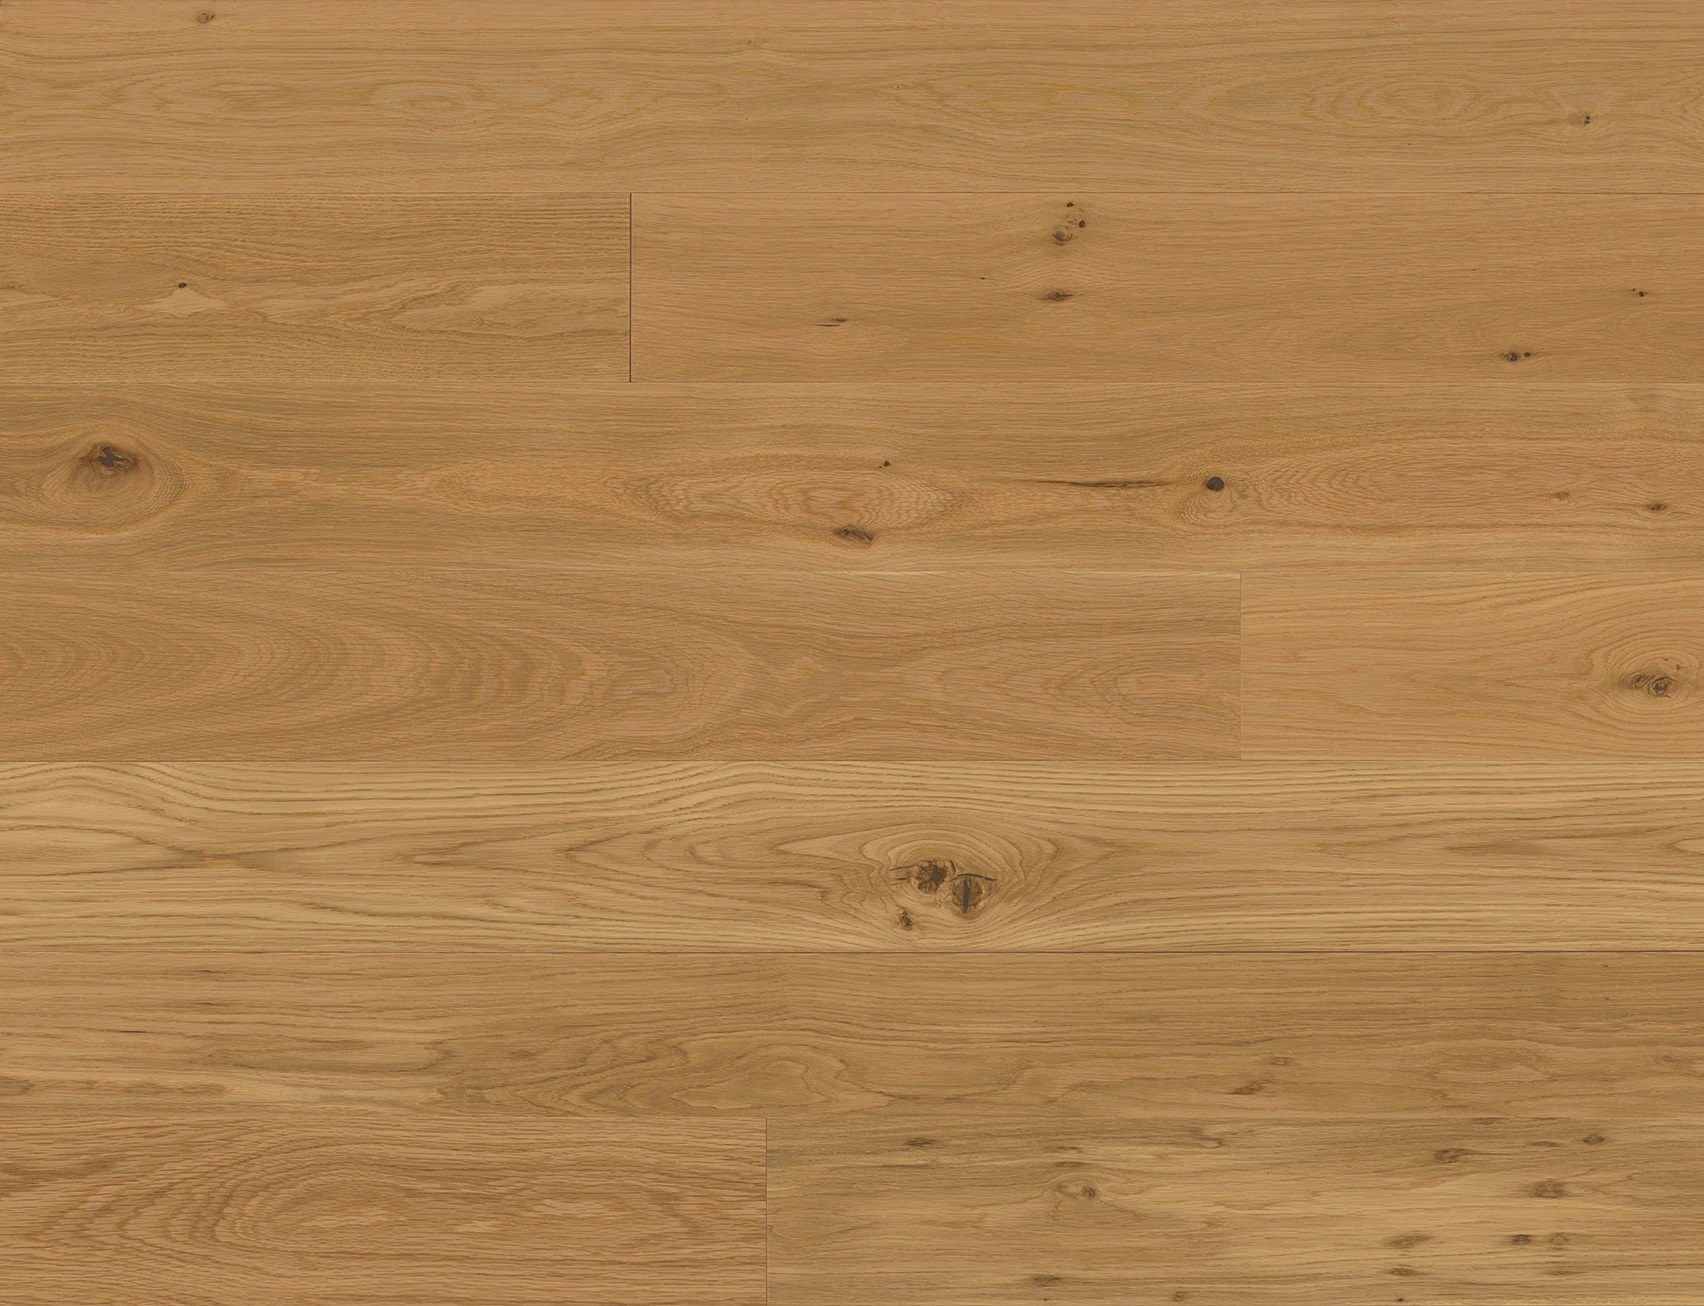 Hardwood Flooring Laminate Floors, Rustic White Oak Hardwood Flooring